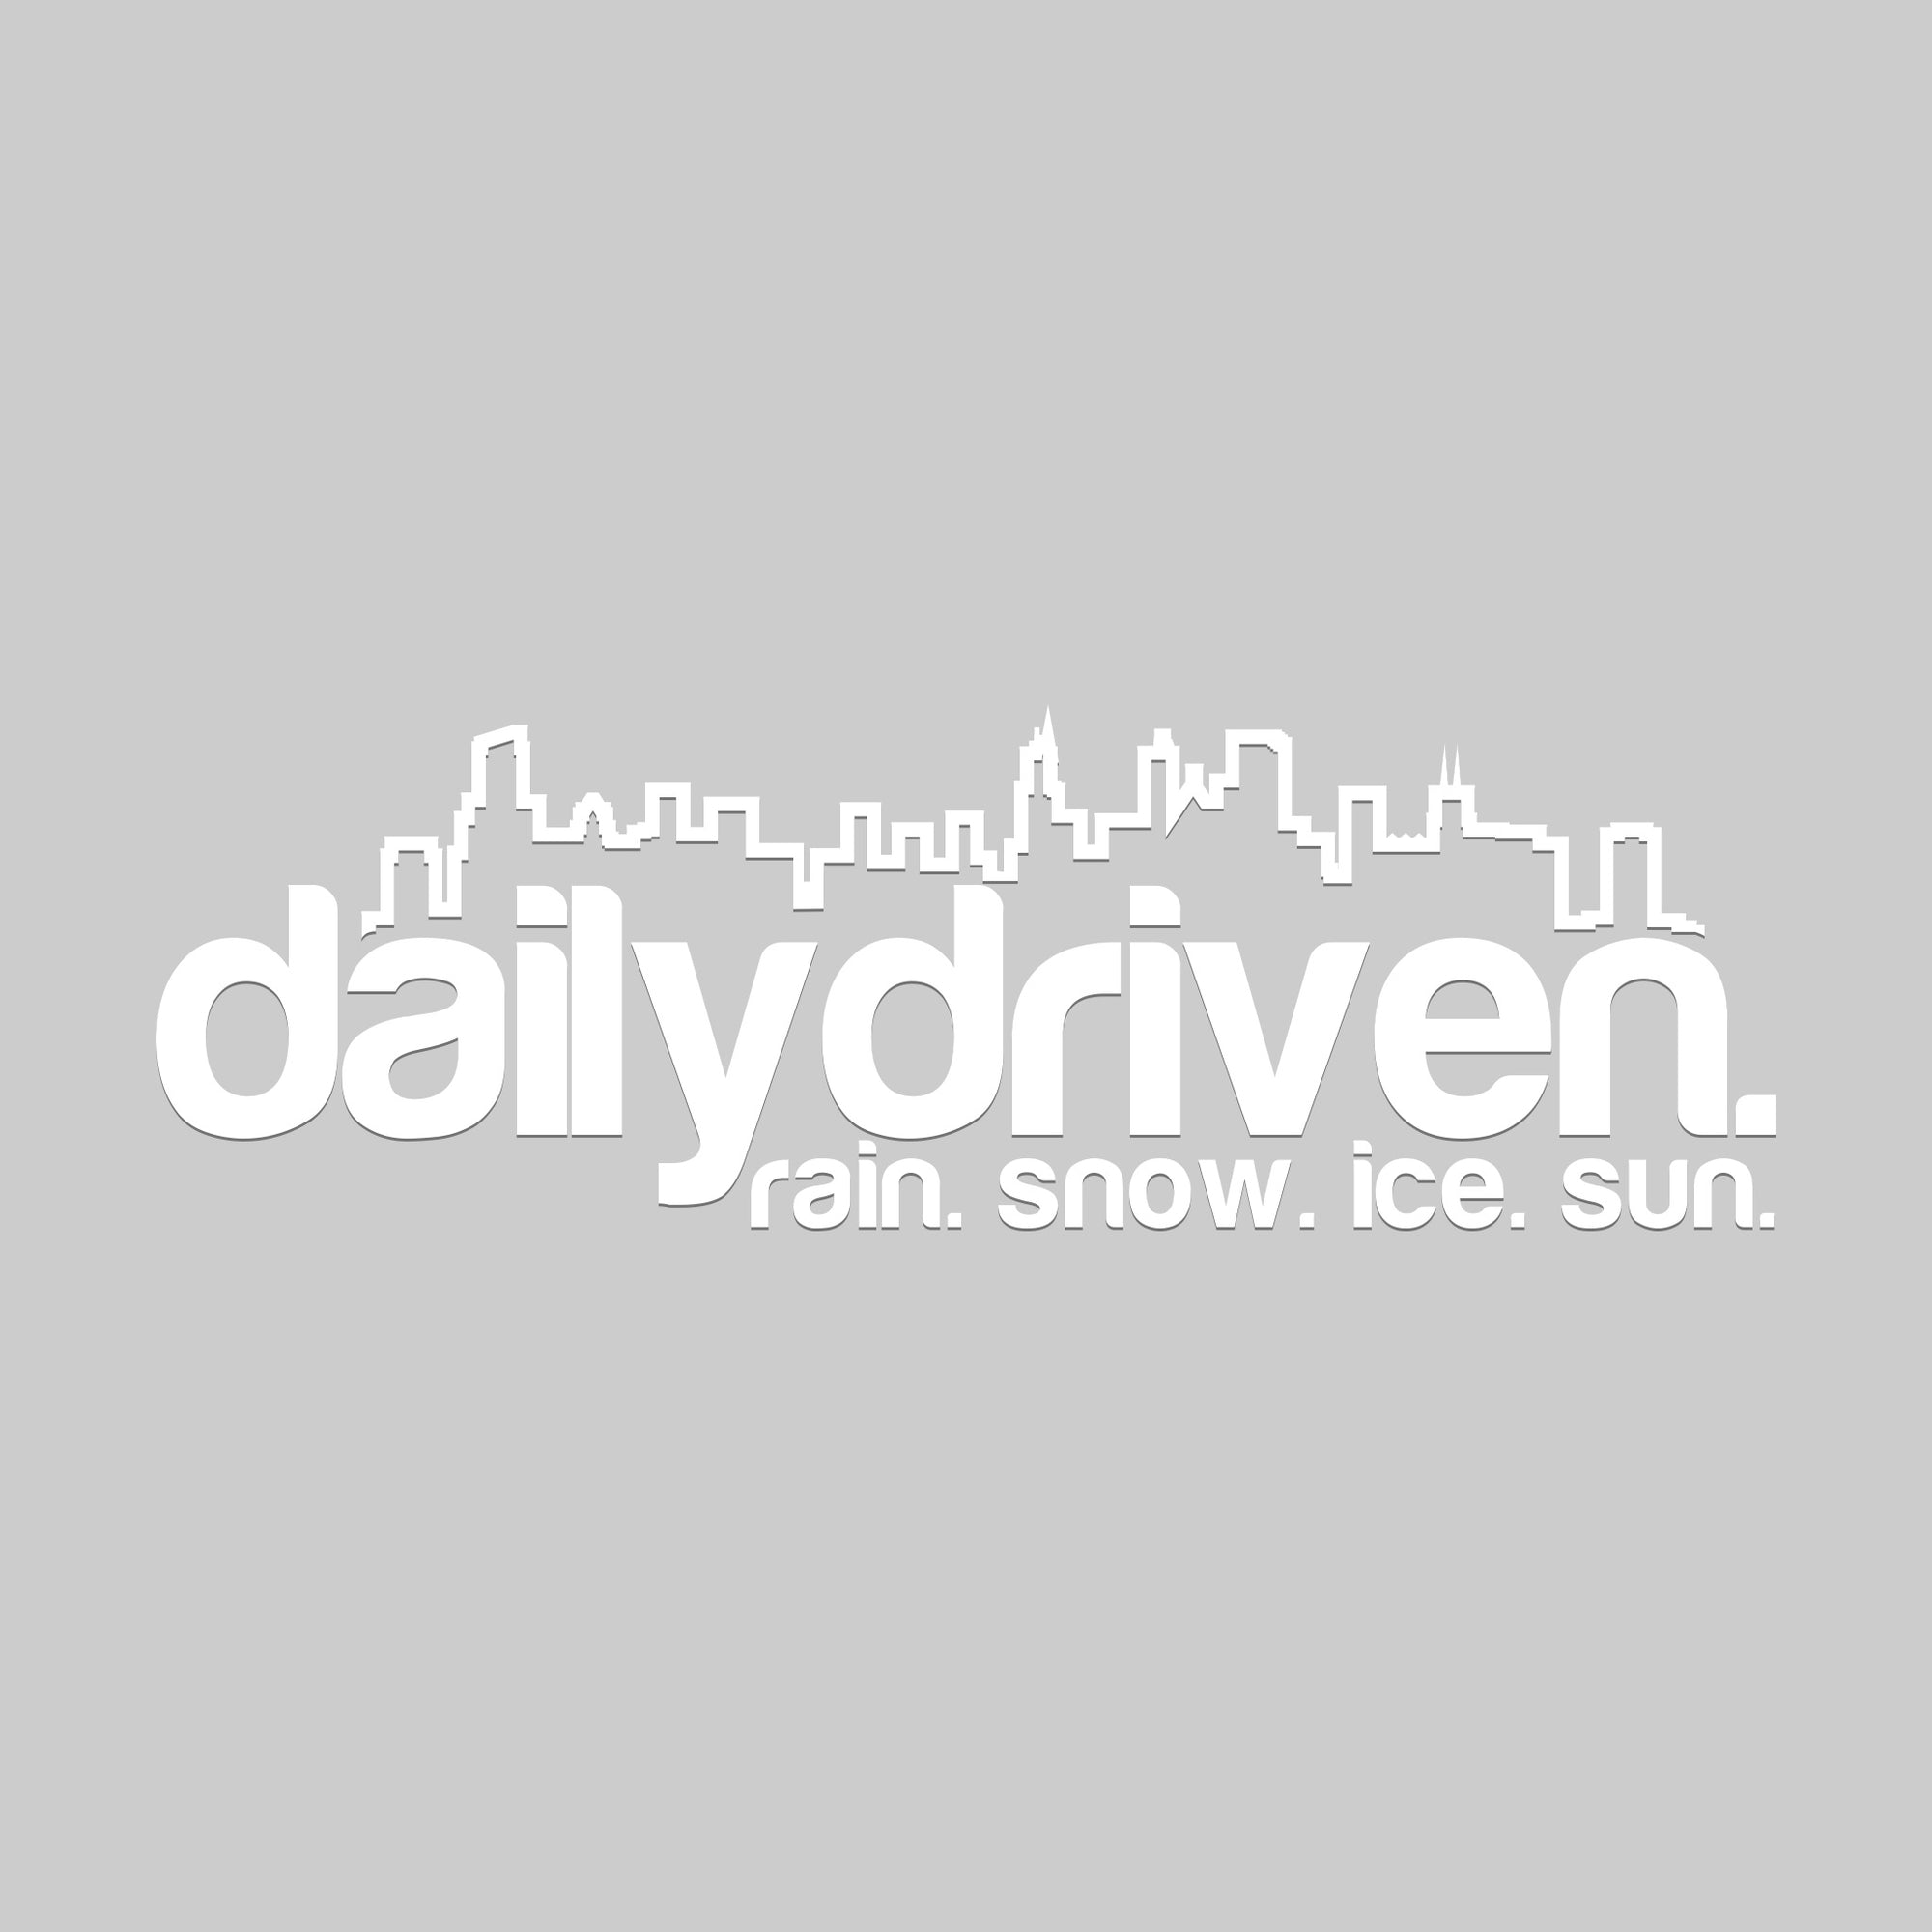 DailyDriven Chicago 8" Sticker